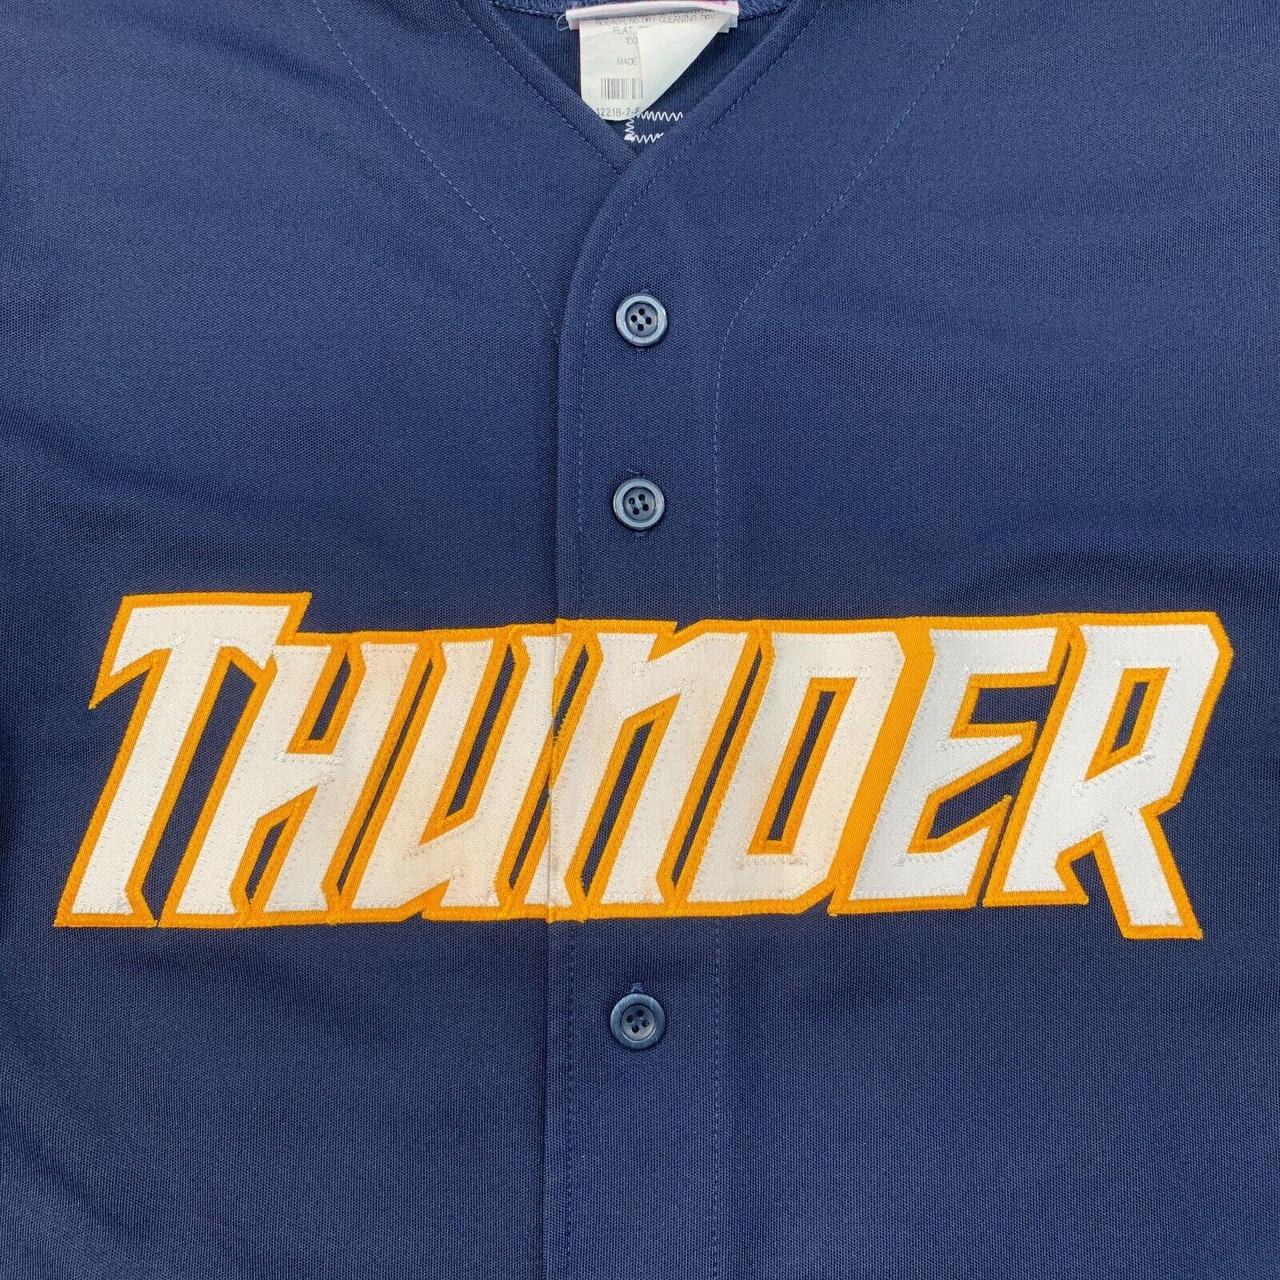 Teamwork Trenton Thunder Baseball Jersey Mens S - Depop